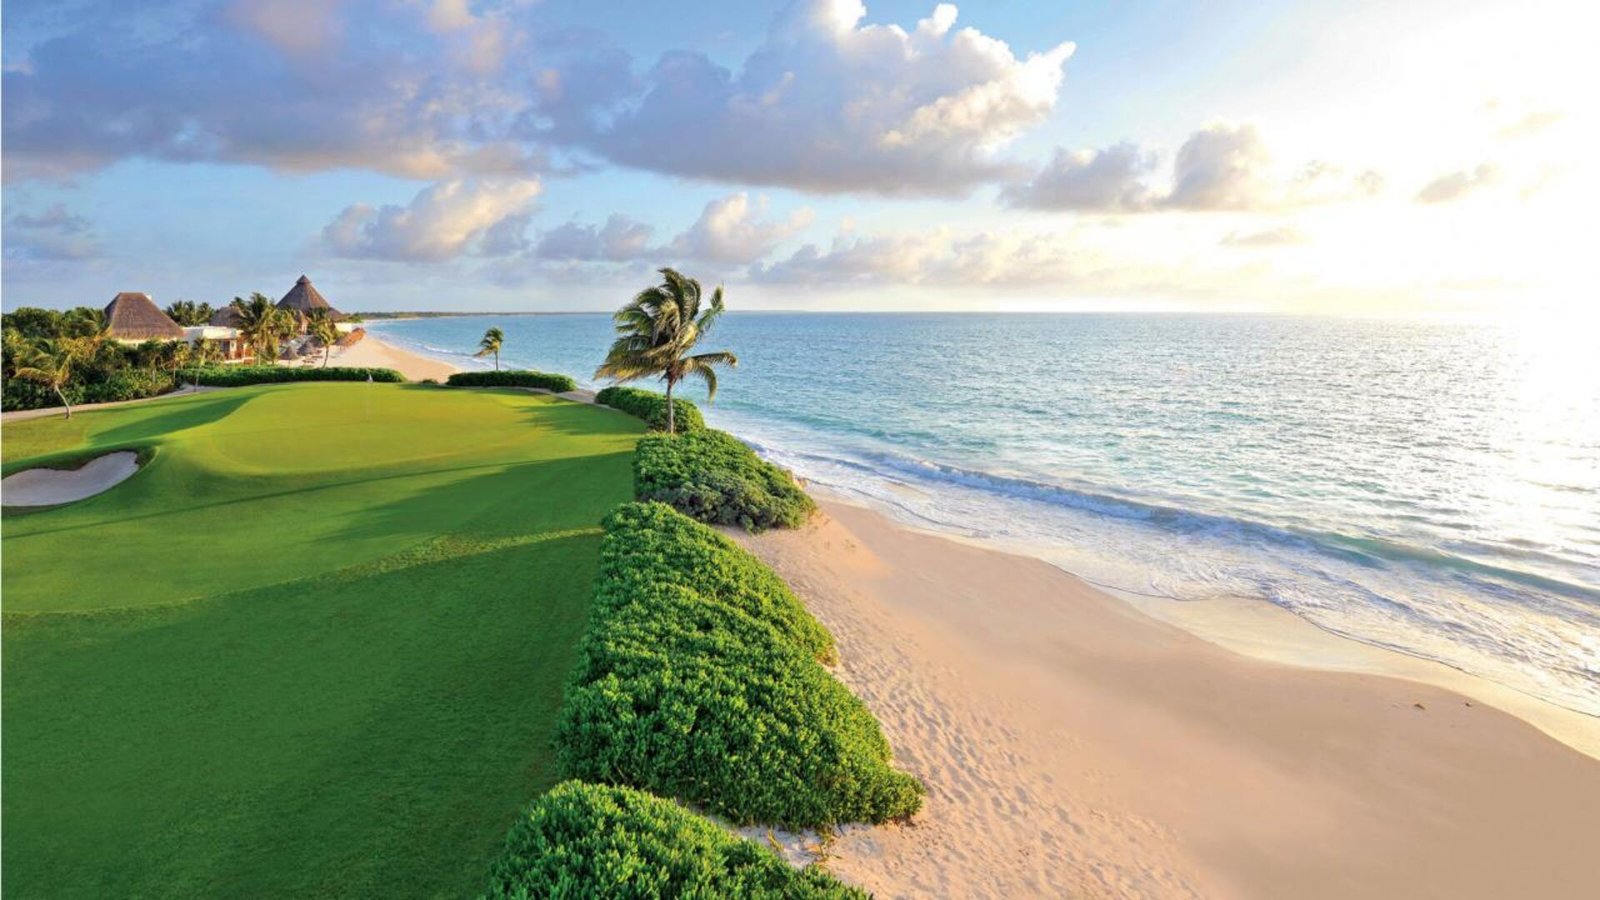 Riviera Maya: A First-Class Destination for Golfers